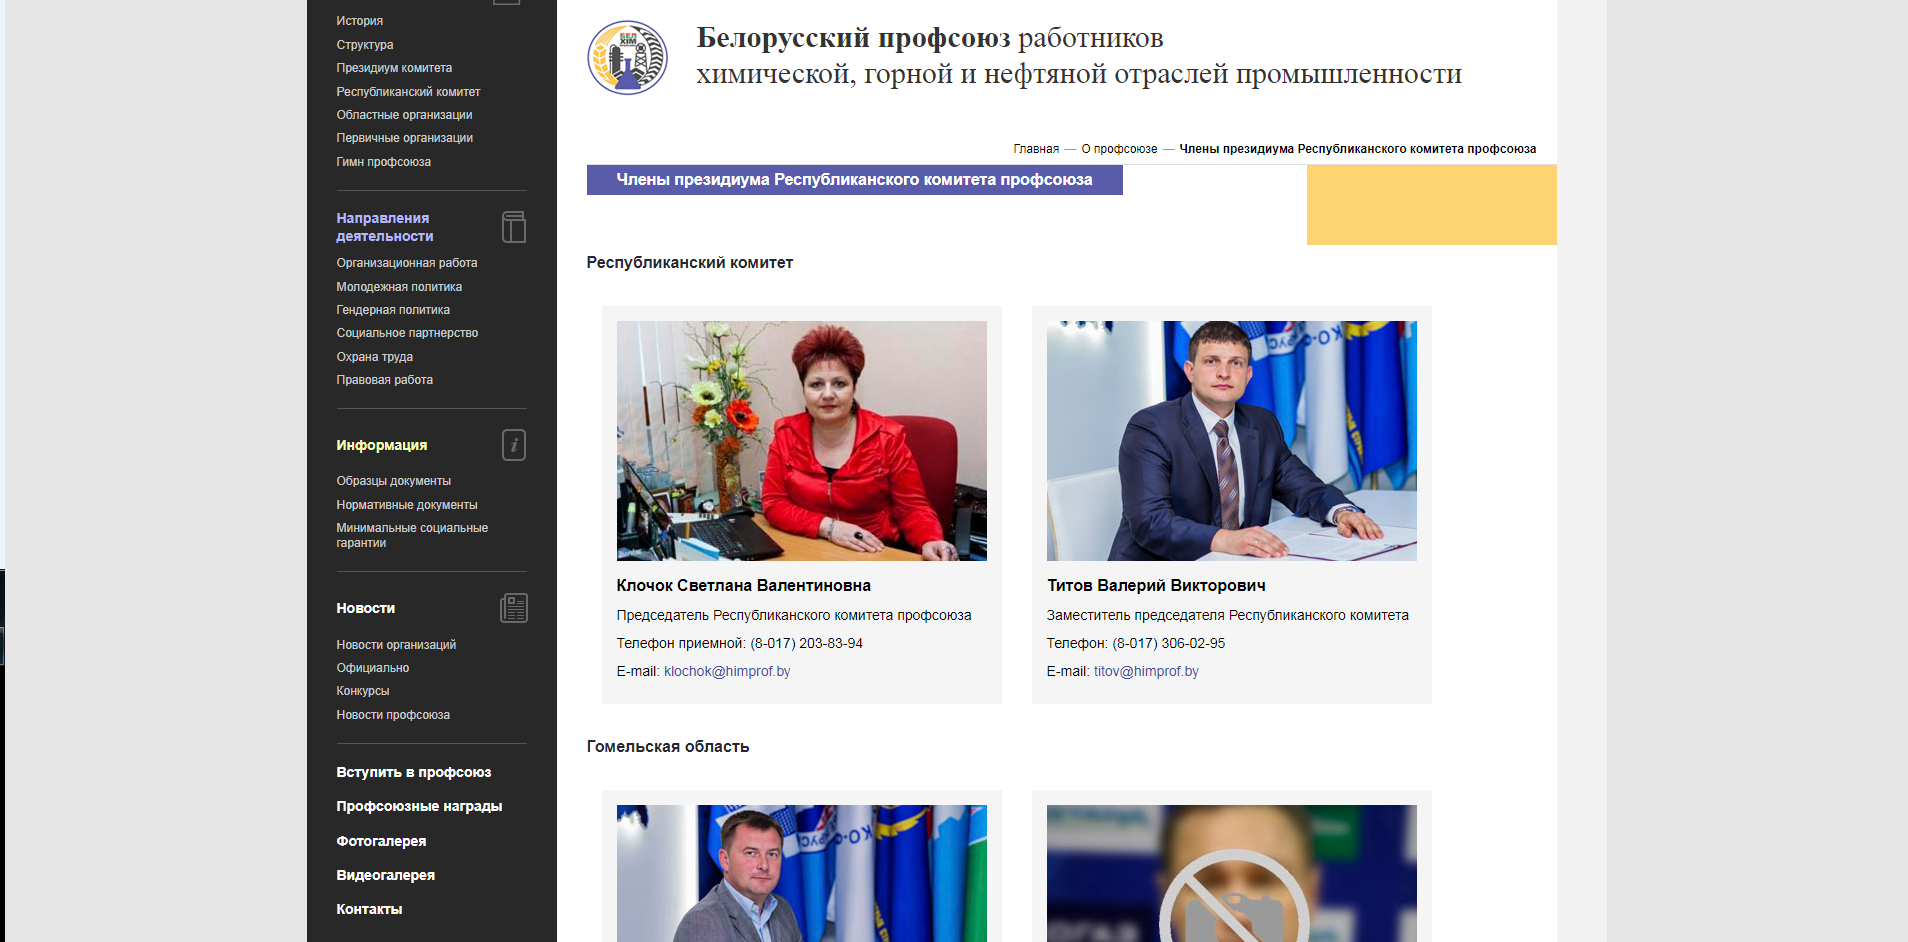 корпоративный сайт белорусского профсоюза работников  химической, горной и нефтяной отраслей промышленности